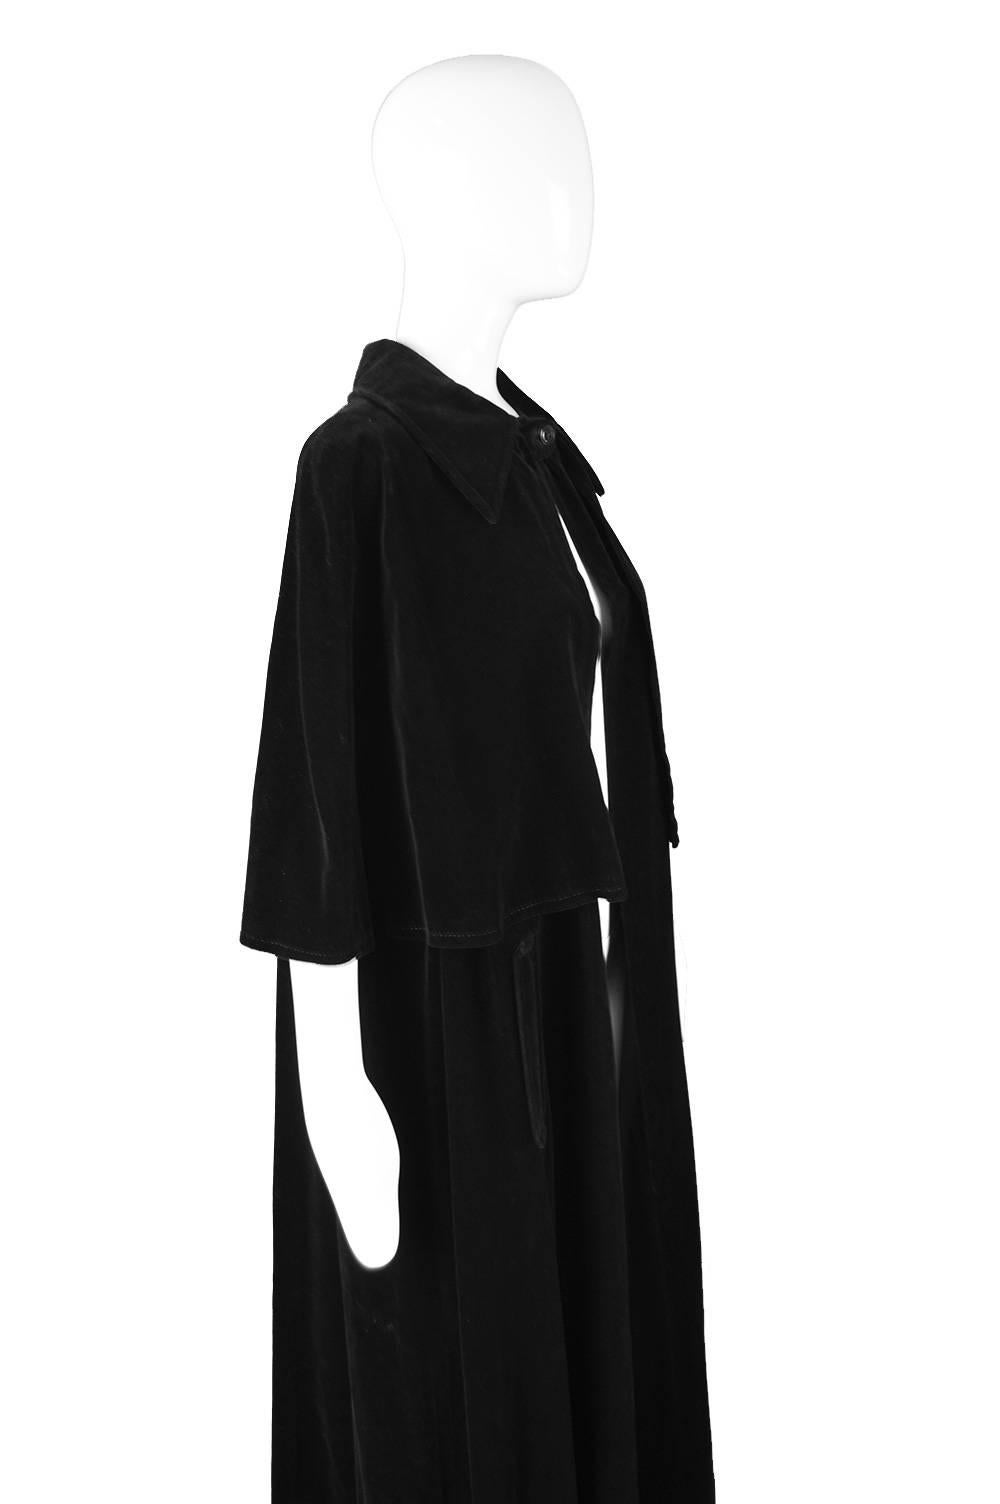 Louis Feraud Full Length Black Velvet Cape Cloak, 1960s 1